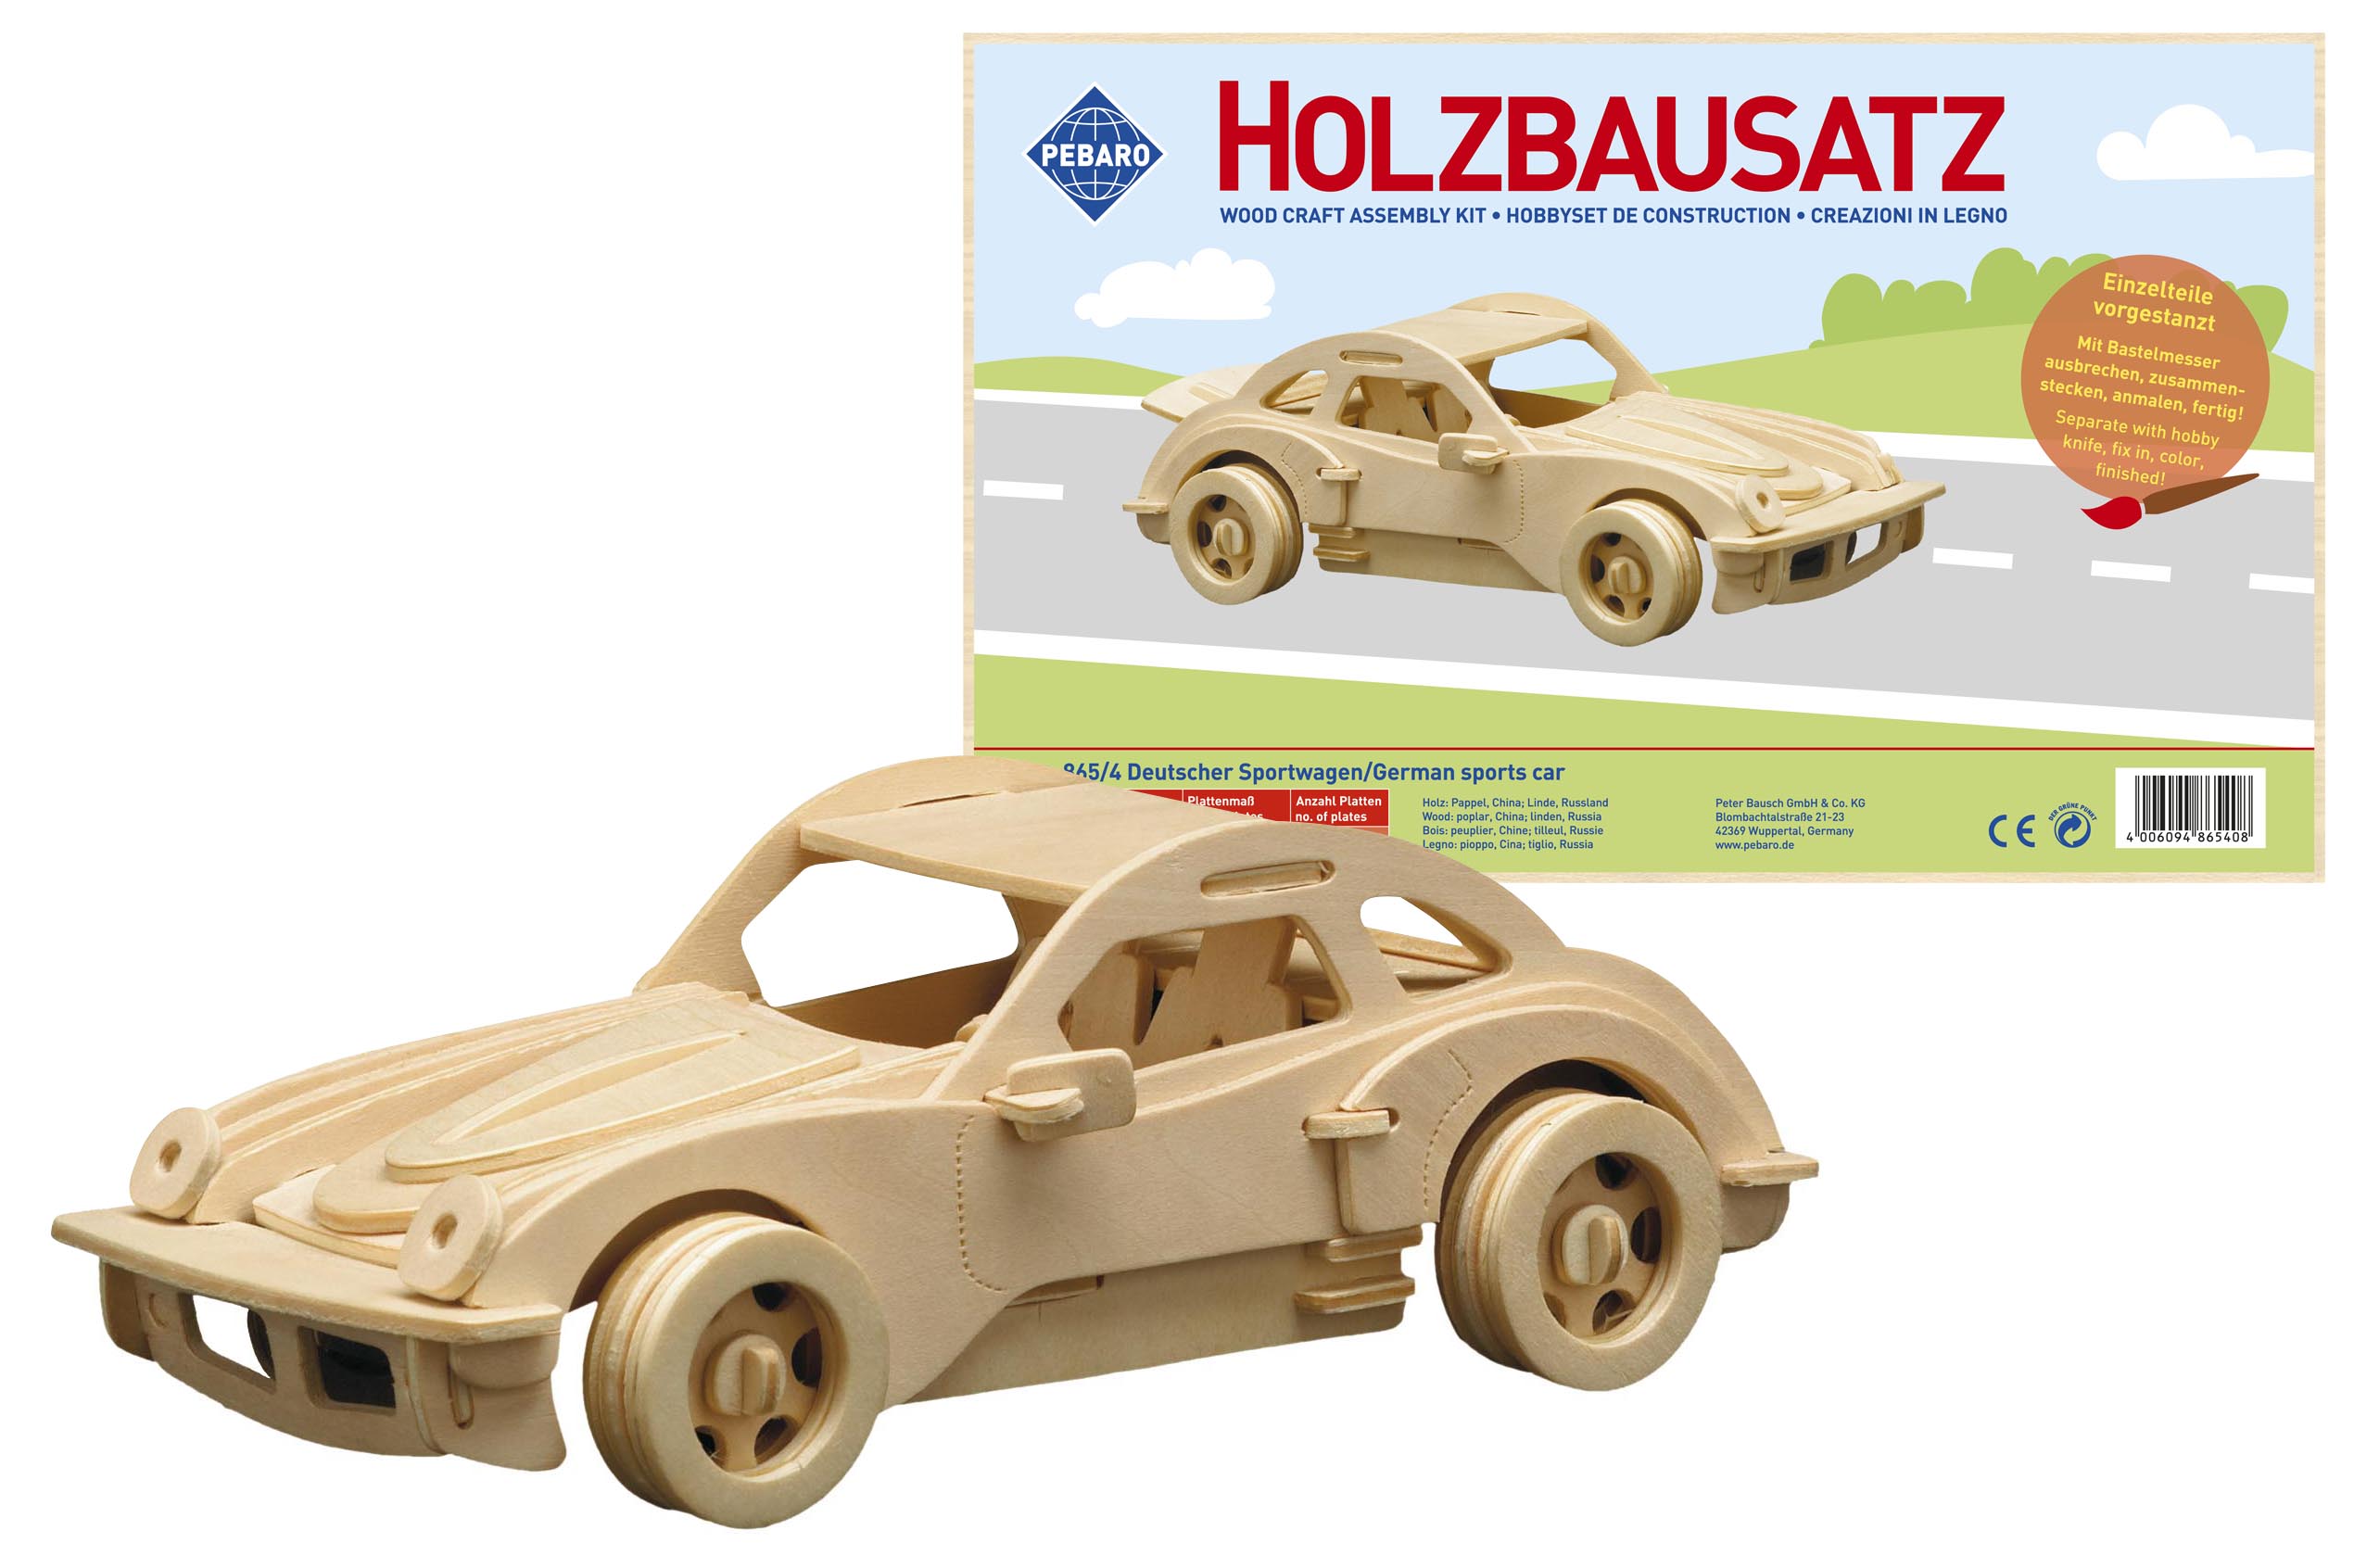 Pebaro Holzbausatz deutscher Sportwagen.